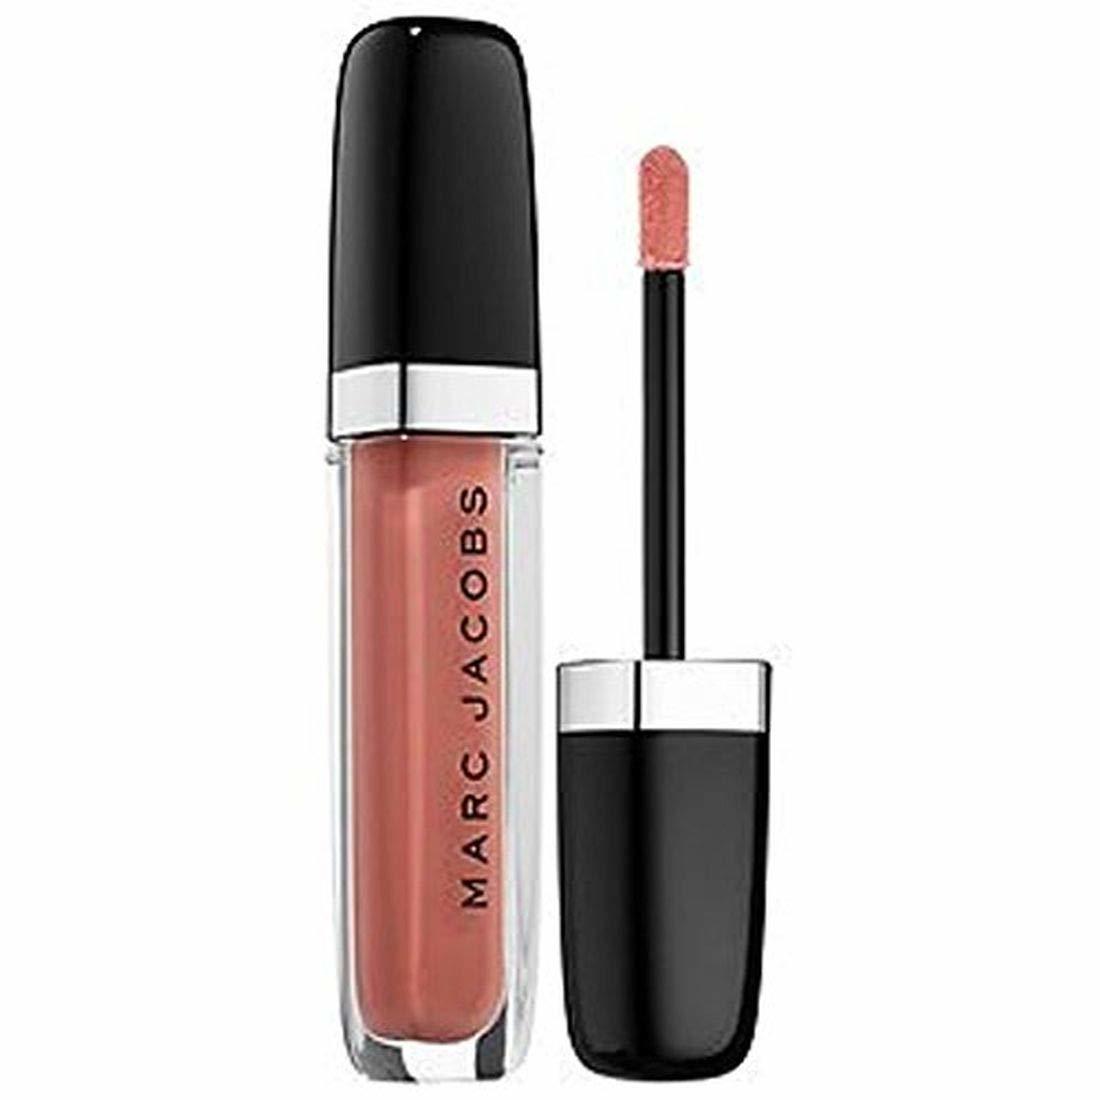 Marc Jacobs Enamored Hi-Shine Gloss Lip Lacquer Pretty Thing Mini 